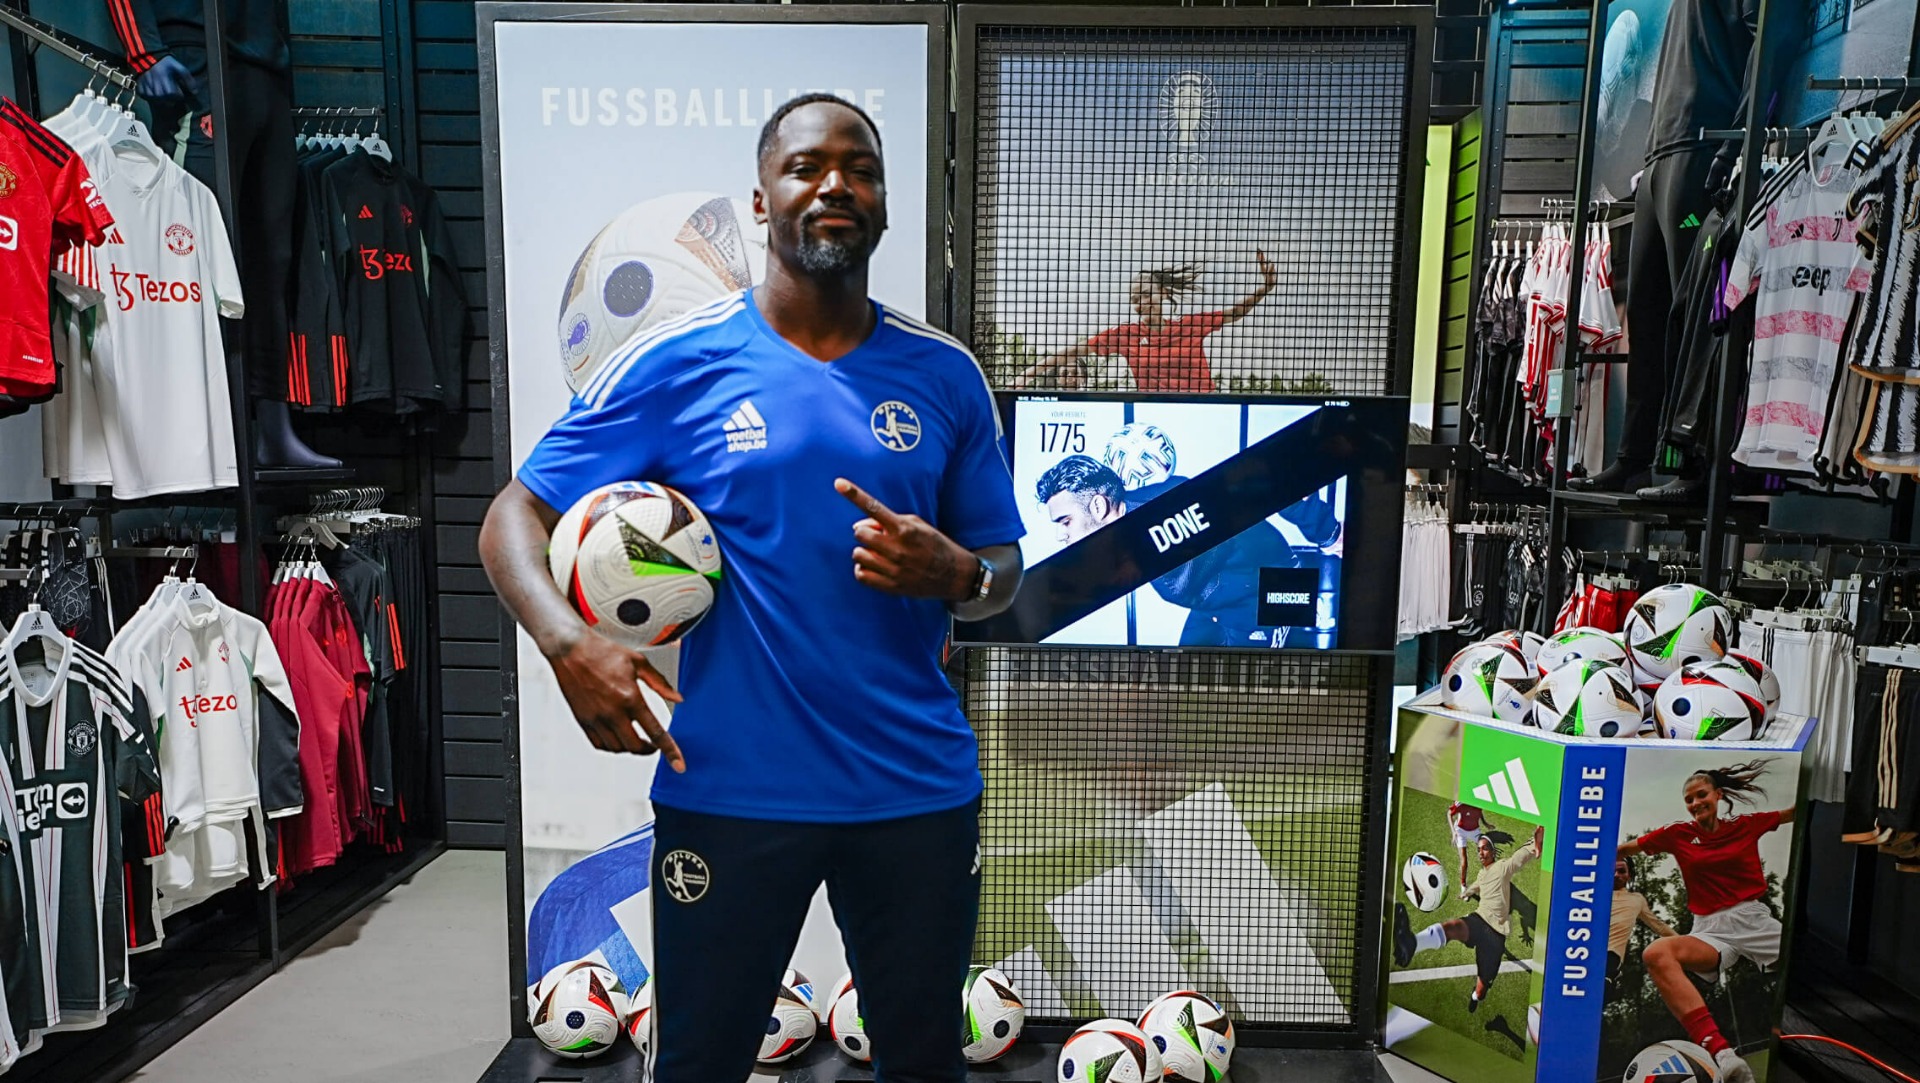 Eerste kennismaking met adidas Fussballliebe bij Voetbalshop Antwerpen